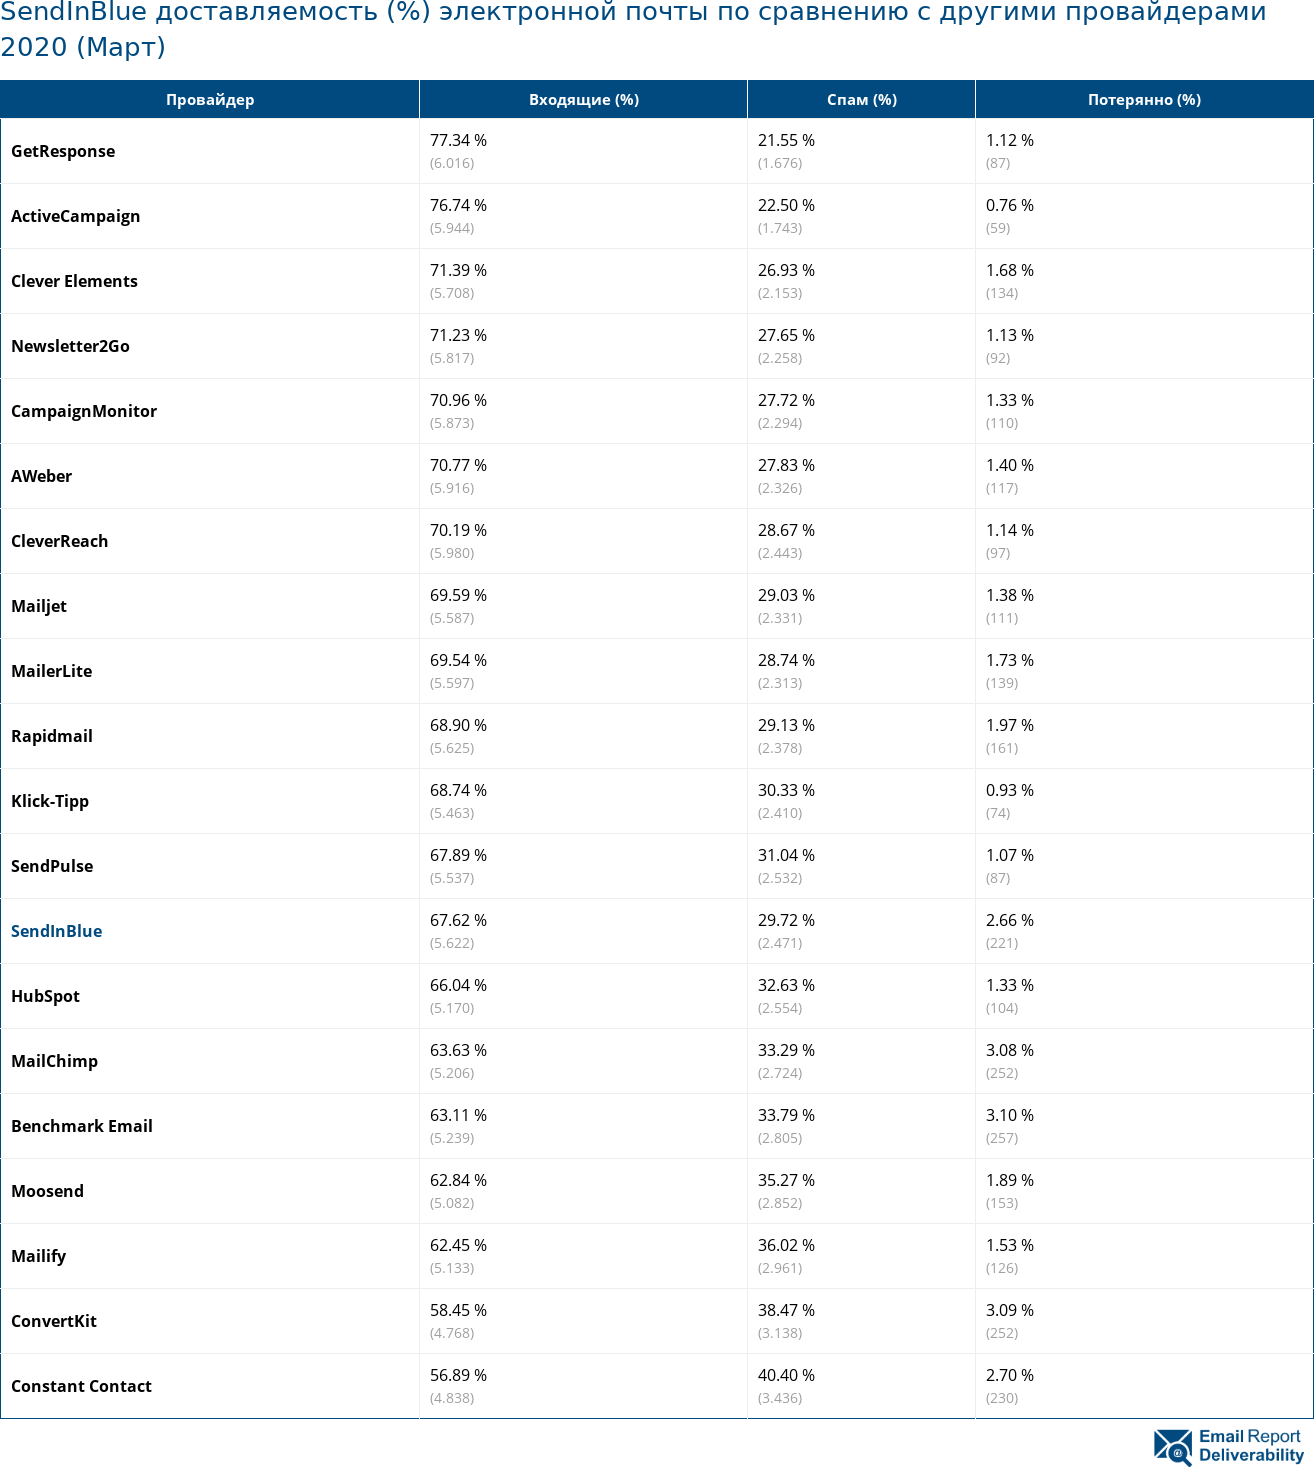 SendInBlue доставляемость (%) электронной почты по сравнению с другими провайдерами 2020 (Март)